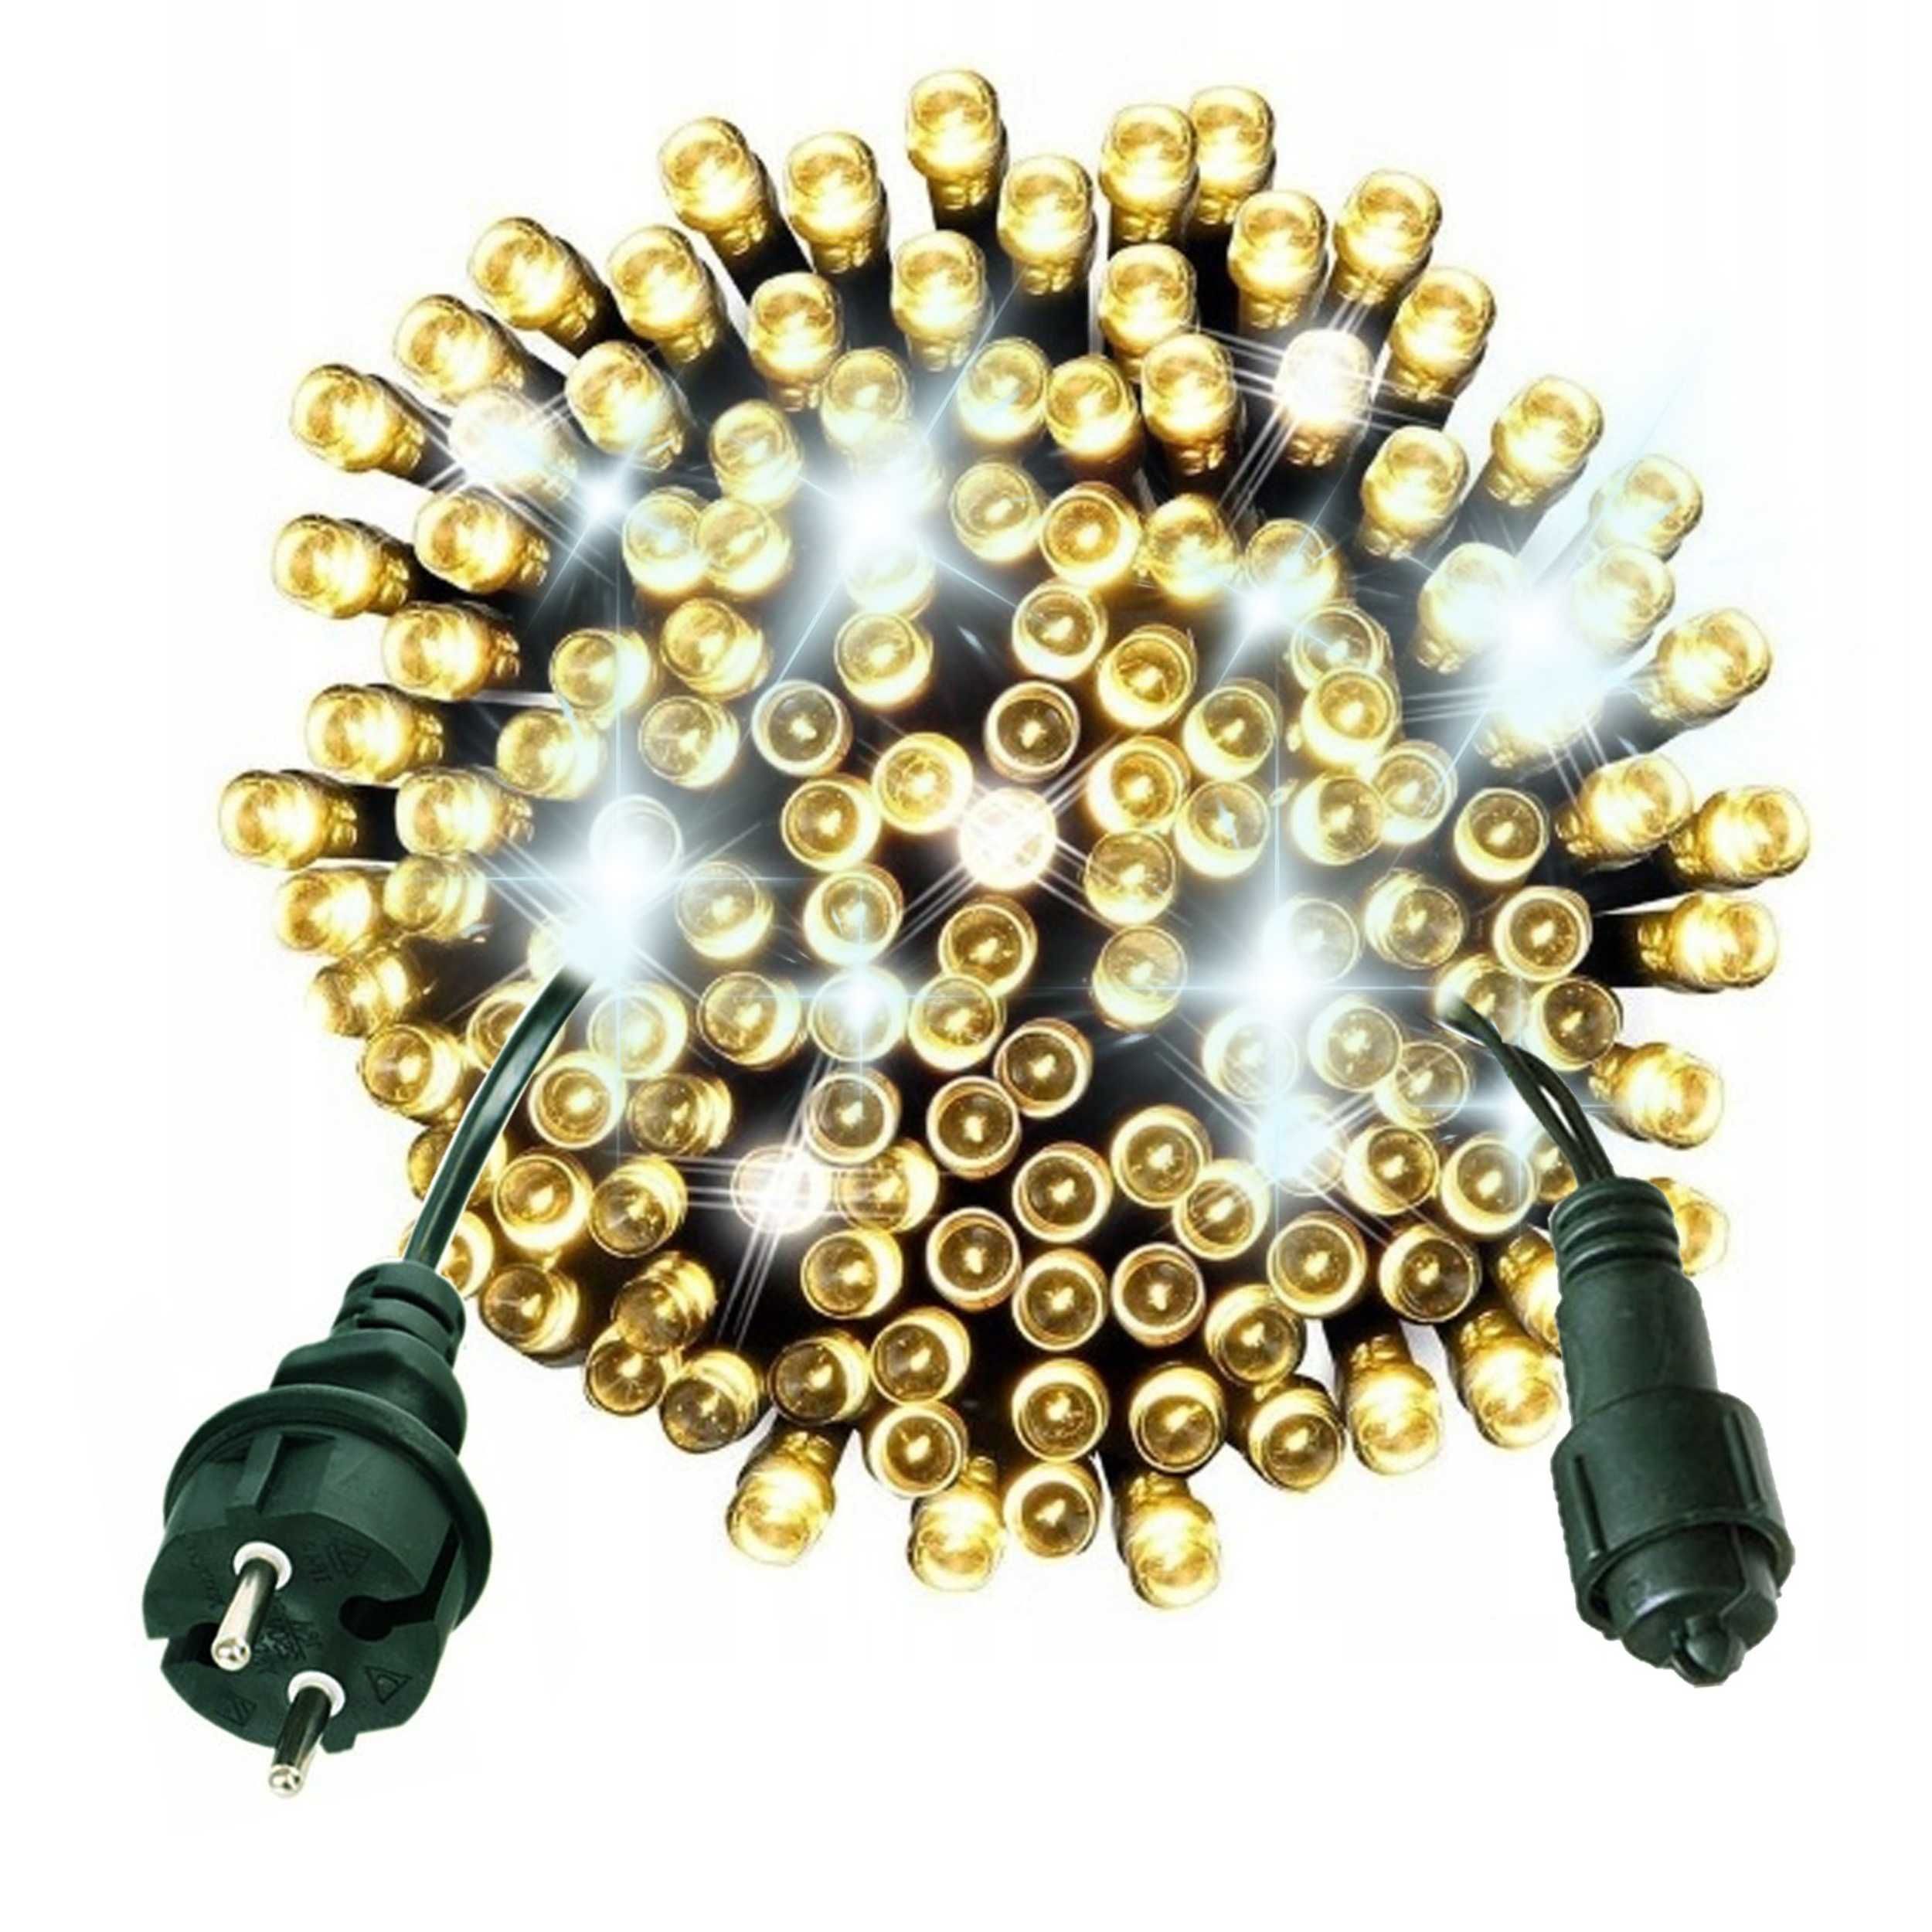 LAMPKI CHOINKOWE 500 LED Zewnętrzne/Wewnętrzne GRUBY Kabel + FLASH